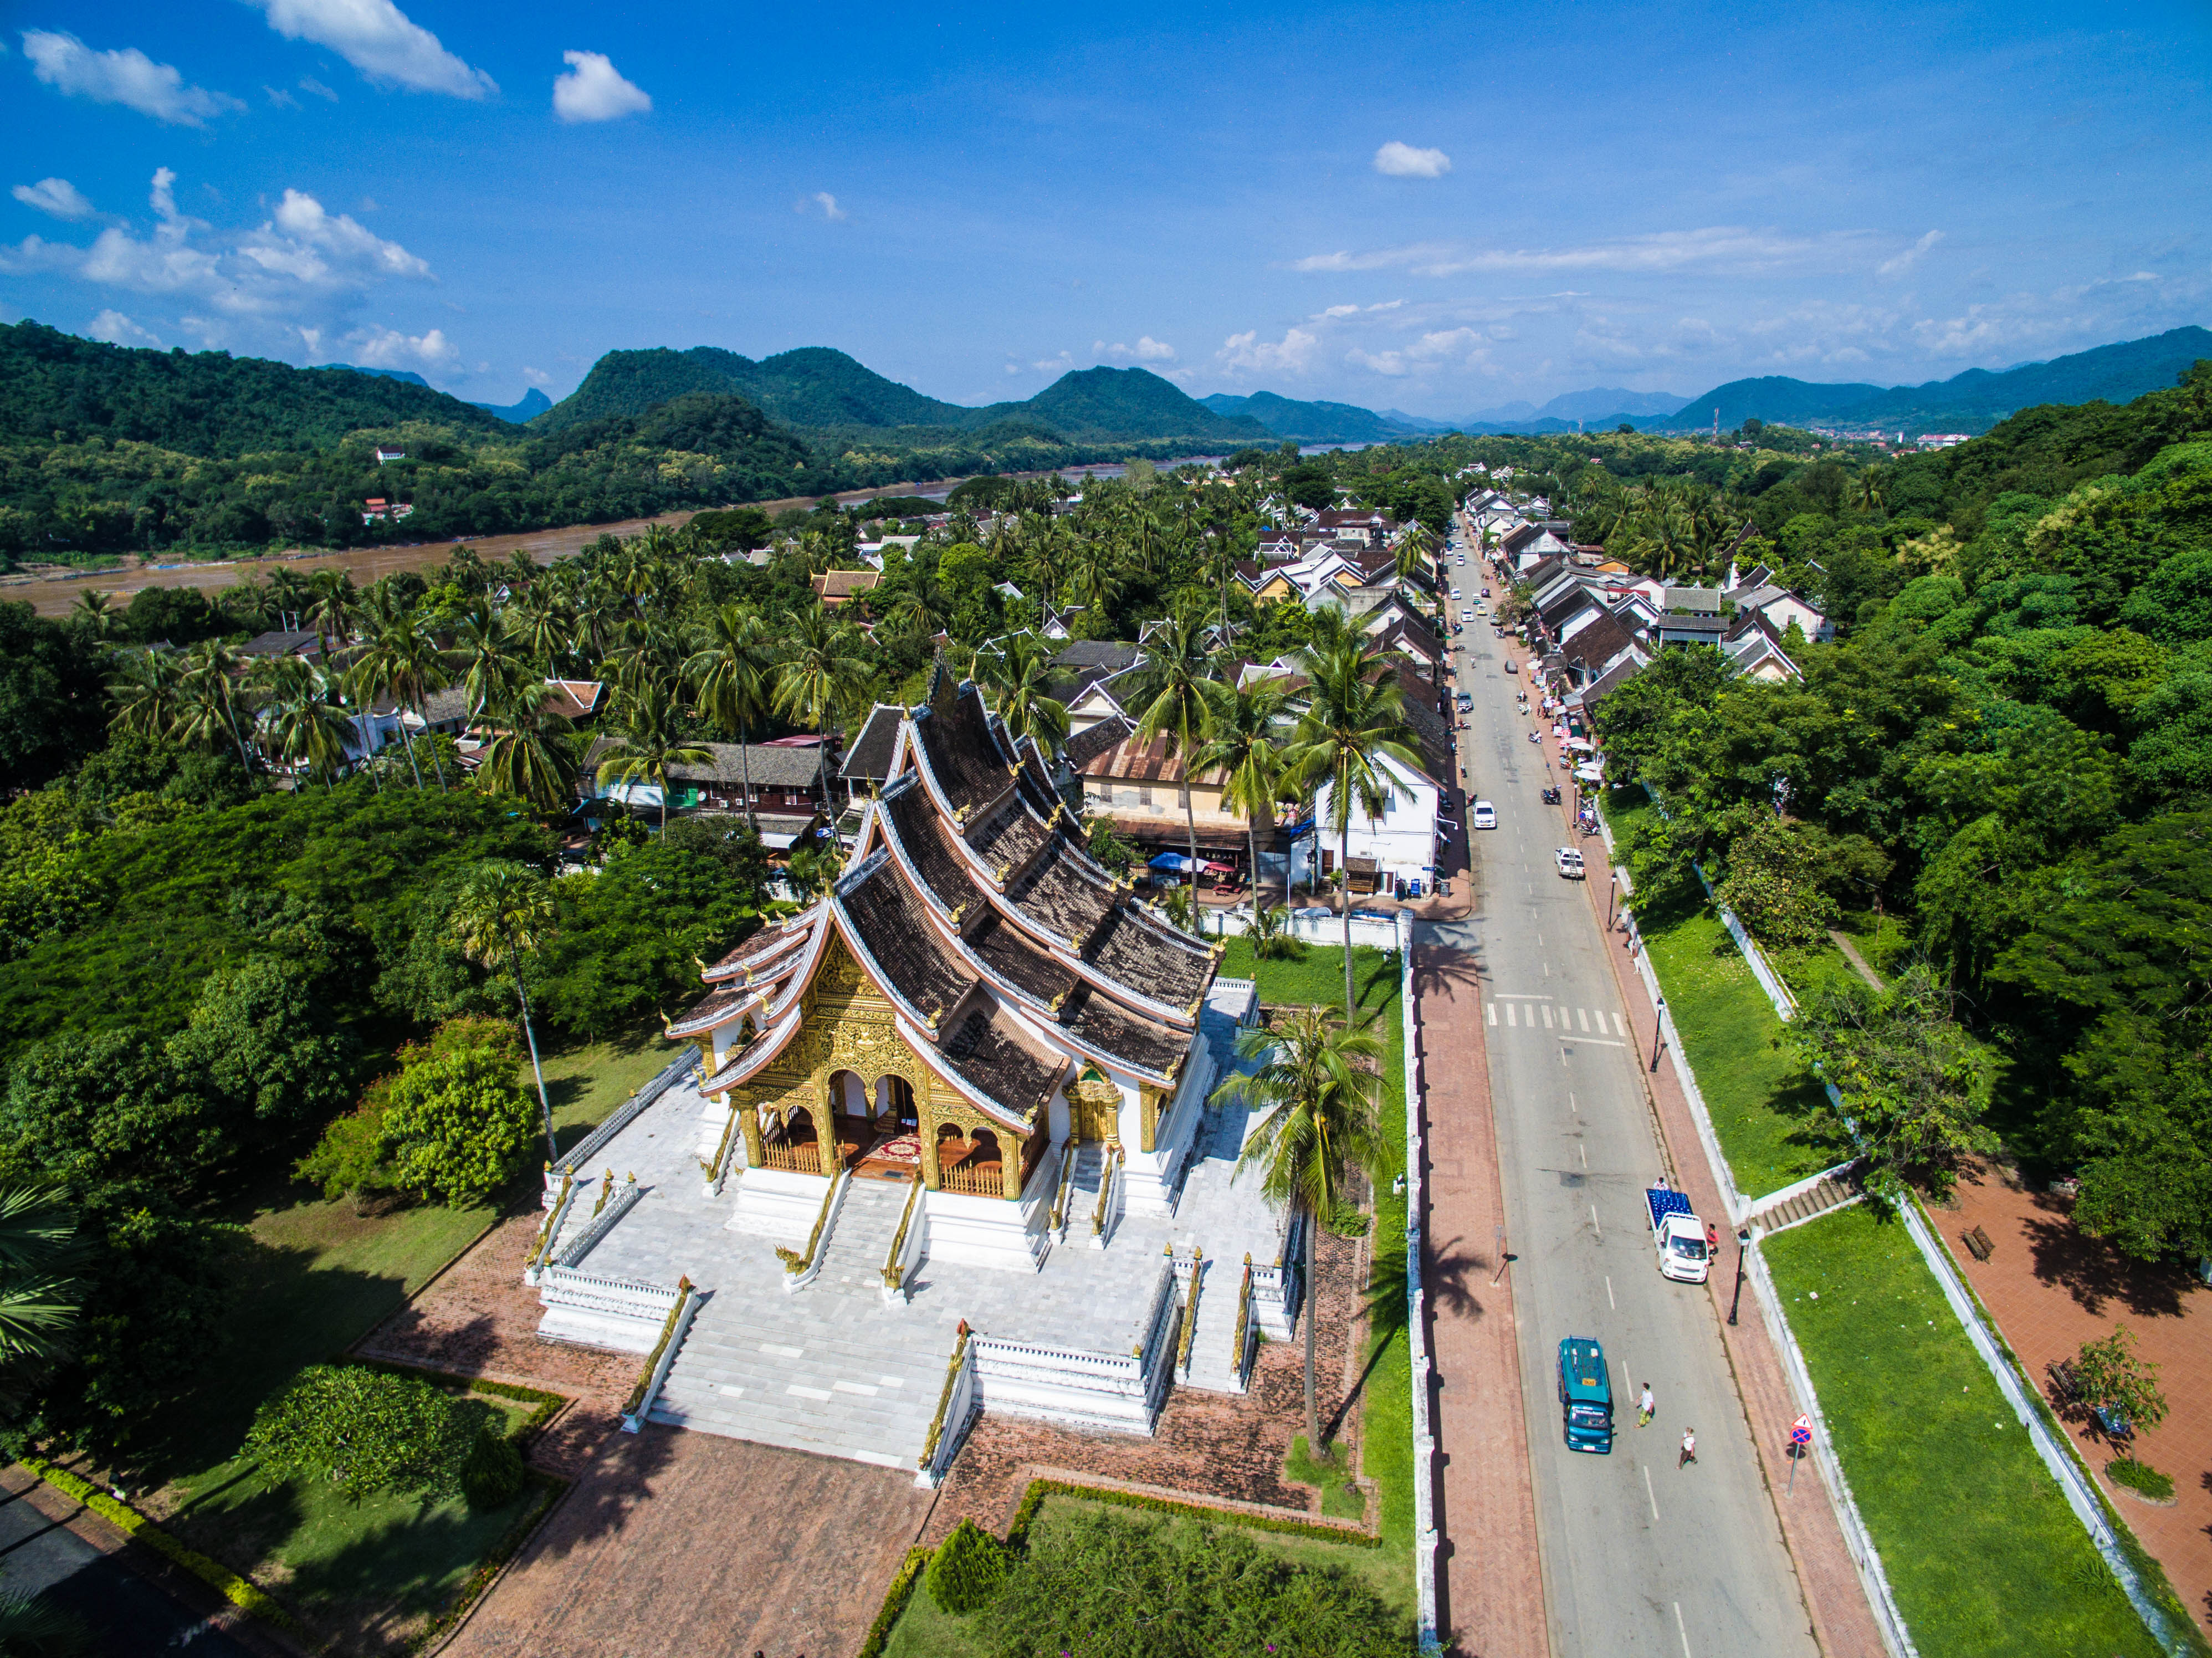 About Luang Prabang